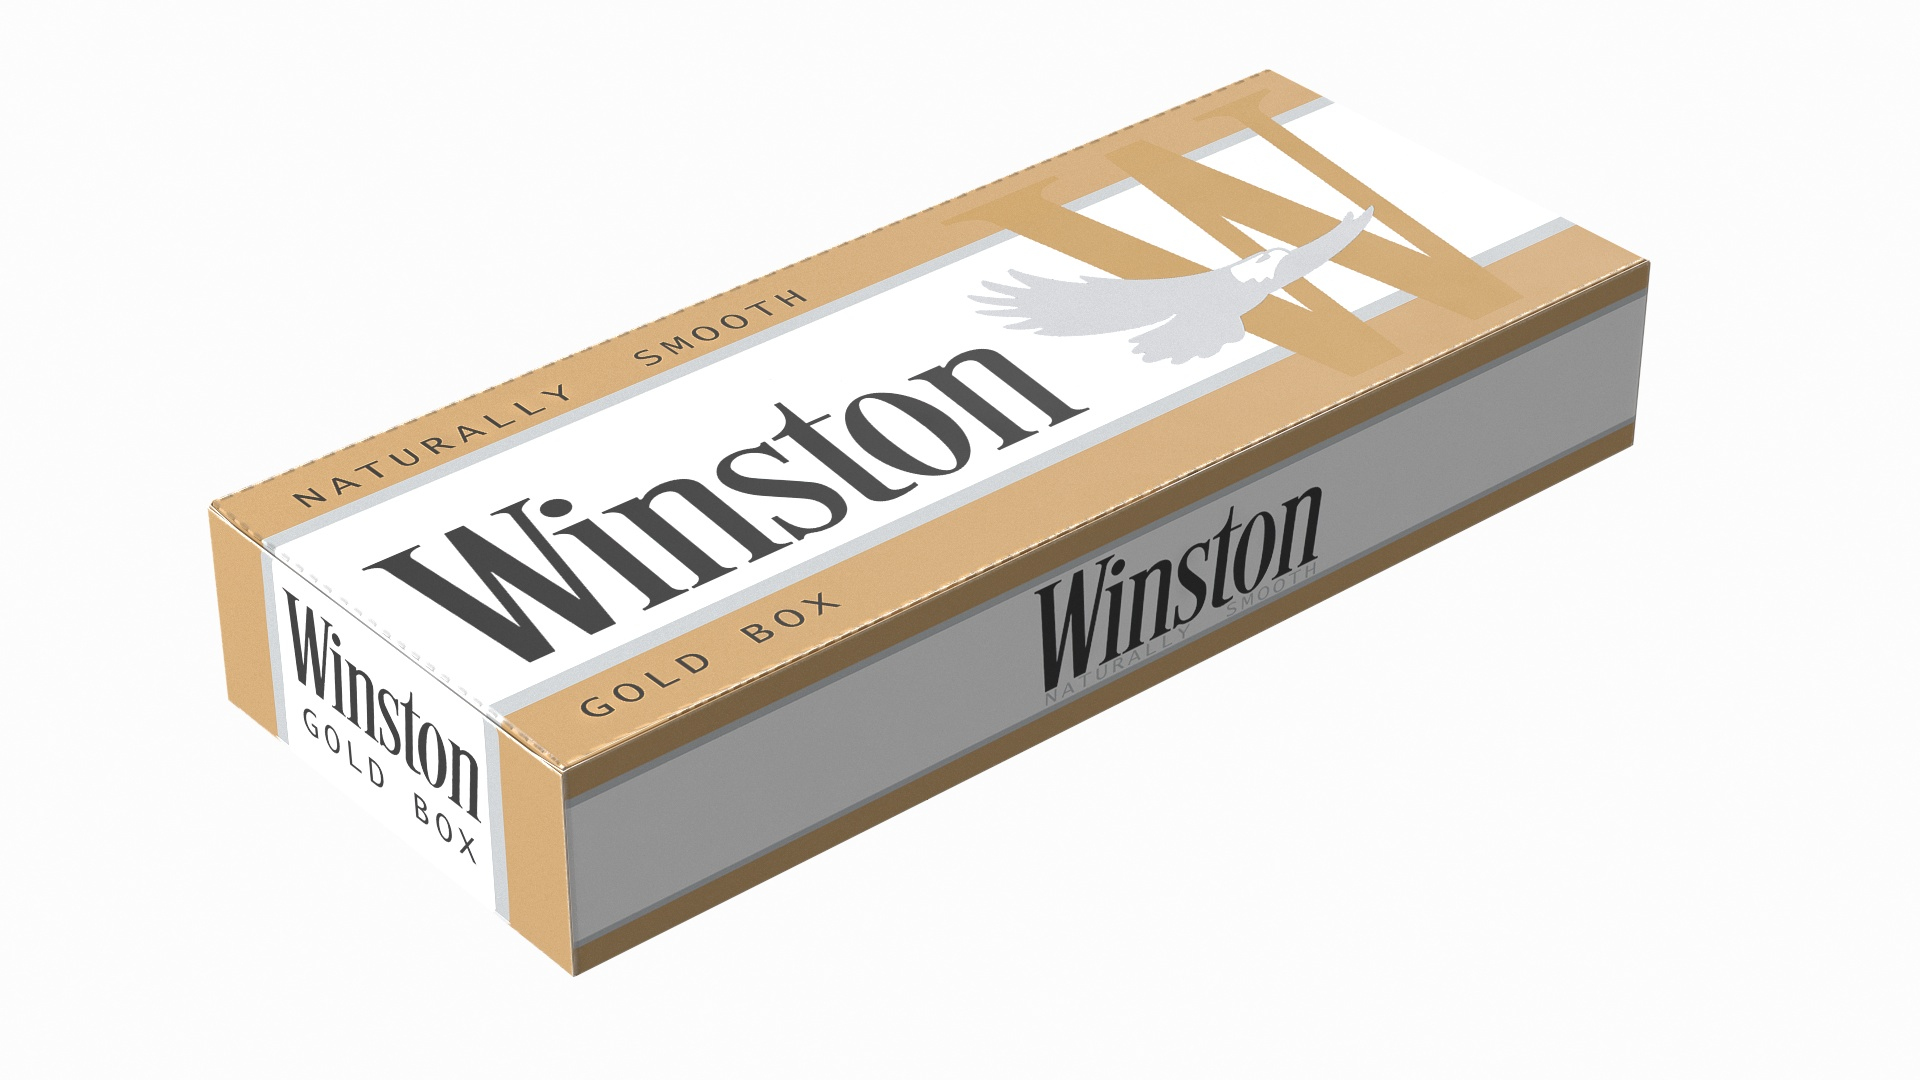 winston cigarette box